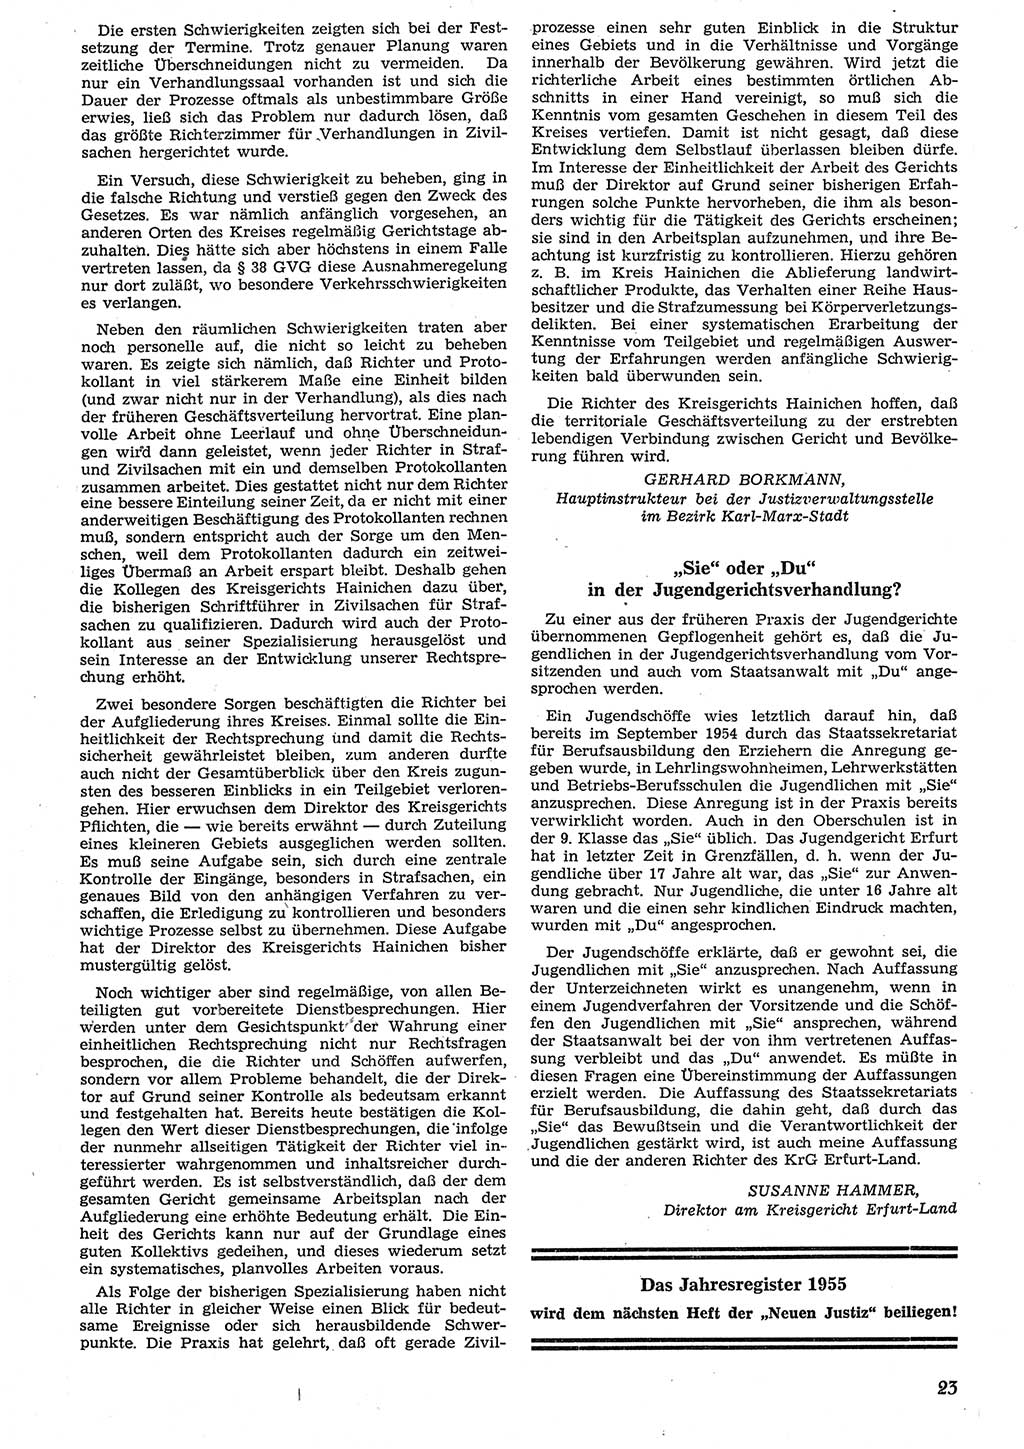 Neue Justiz (NJ), Zeitschrift für Recht und Rechtswissenschaft [Deutsche Demokratische Republik (DDR)], 10. Jahrgang 1956, Seite 23 (NJ DDR 1956, S. 23)